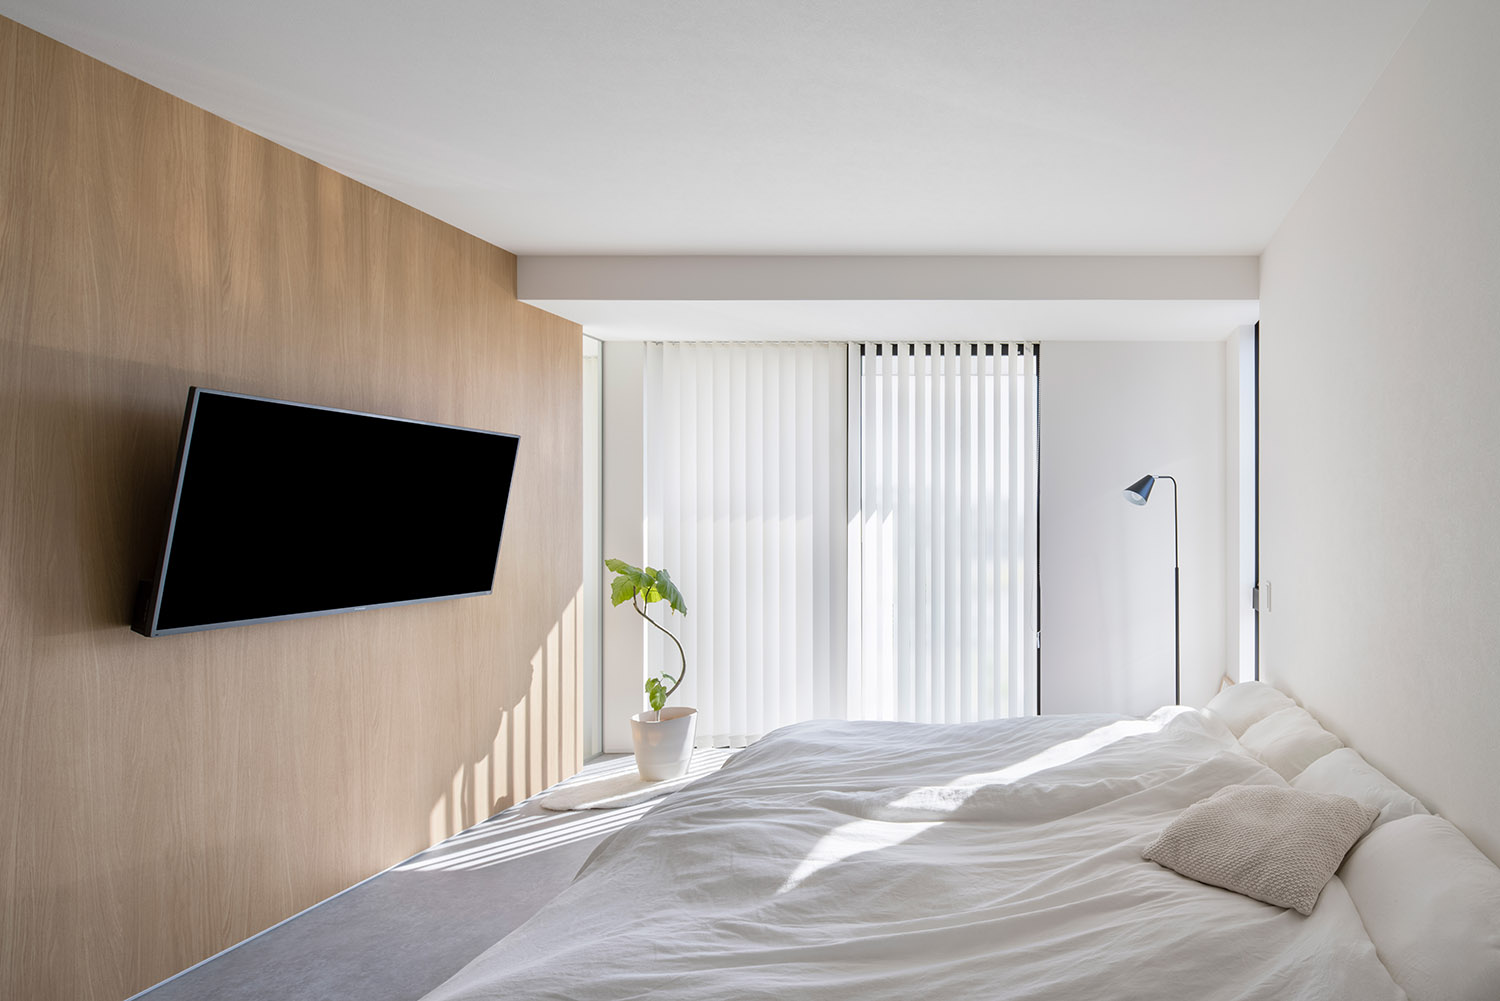 壁付けテレビがあるシンプルでホテルライクな寝室・デザイン住宅